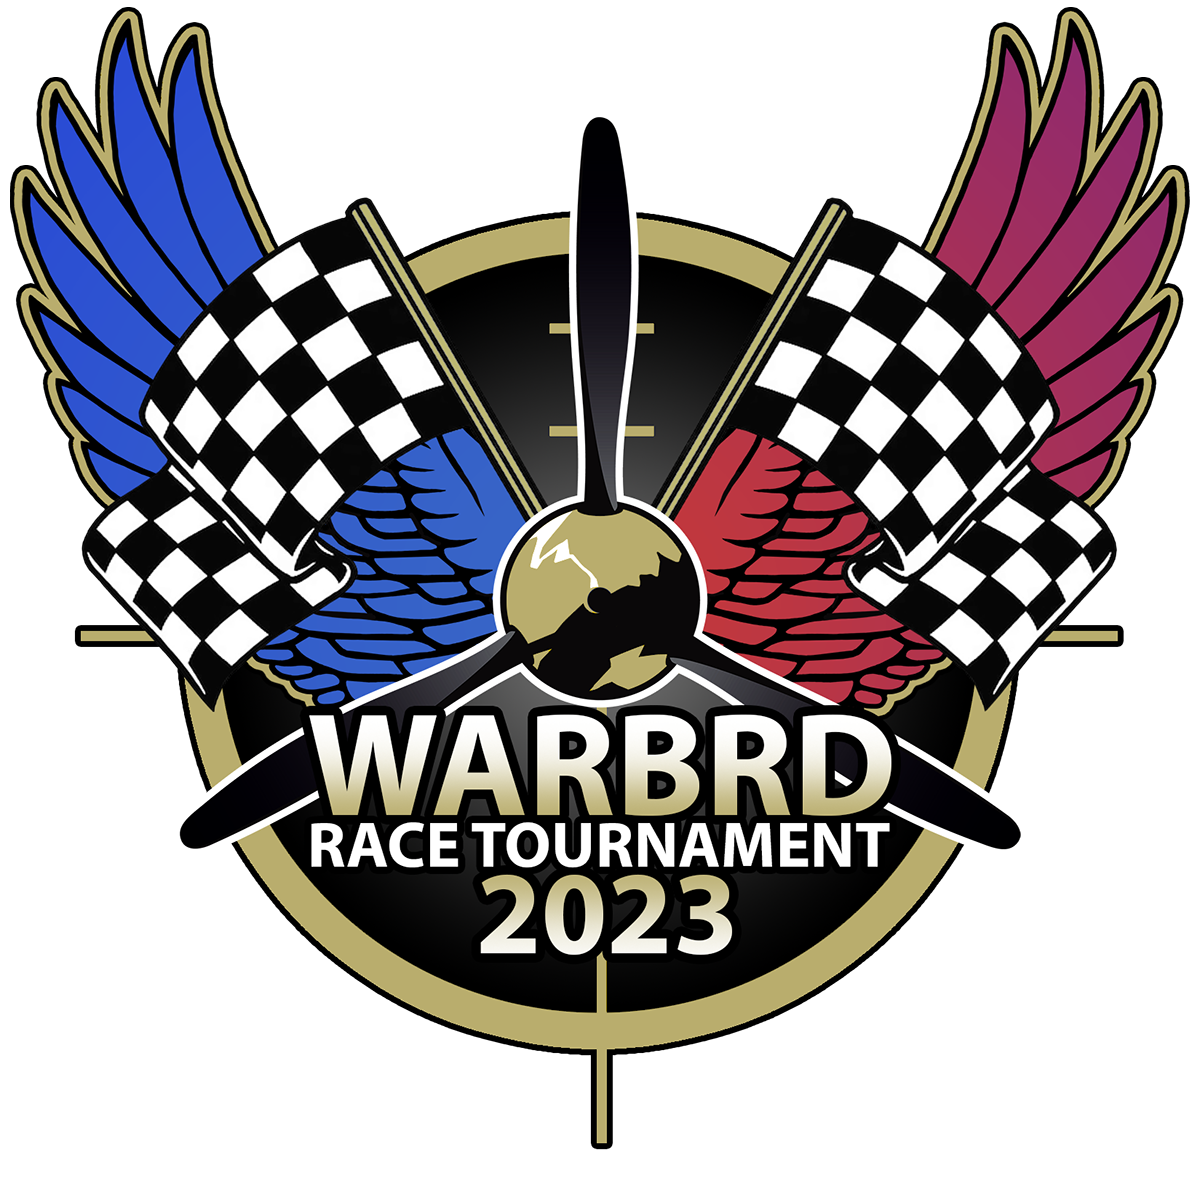 WarBRD Racing Tournament 2023